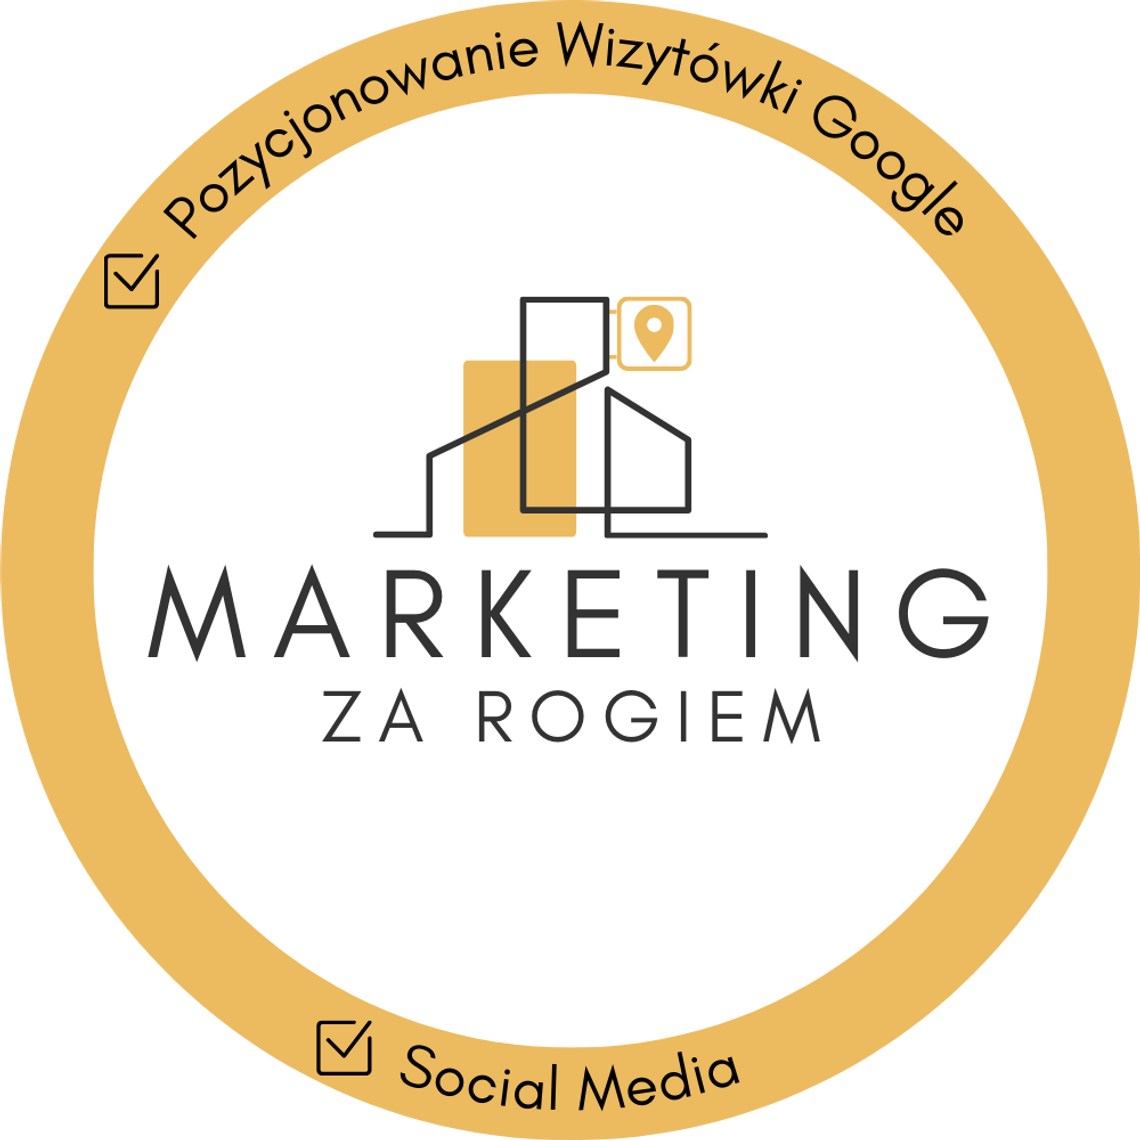 Marketing Za Rogiem | Pozycjonowanie Wizytówki Google | Social Media